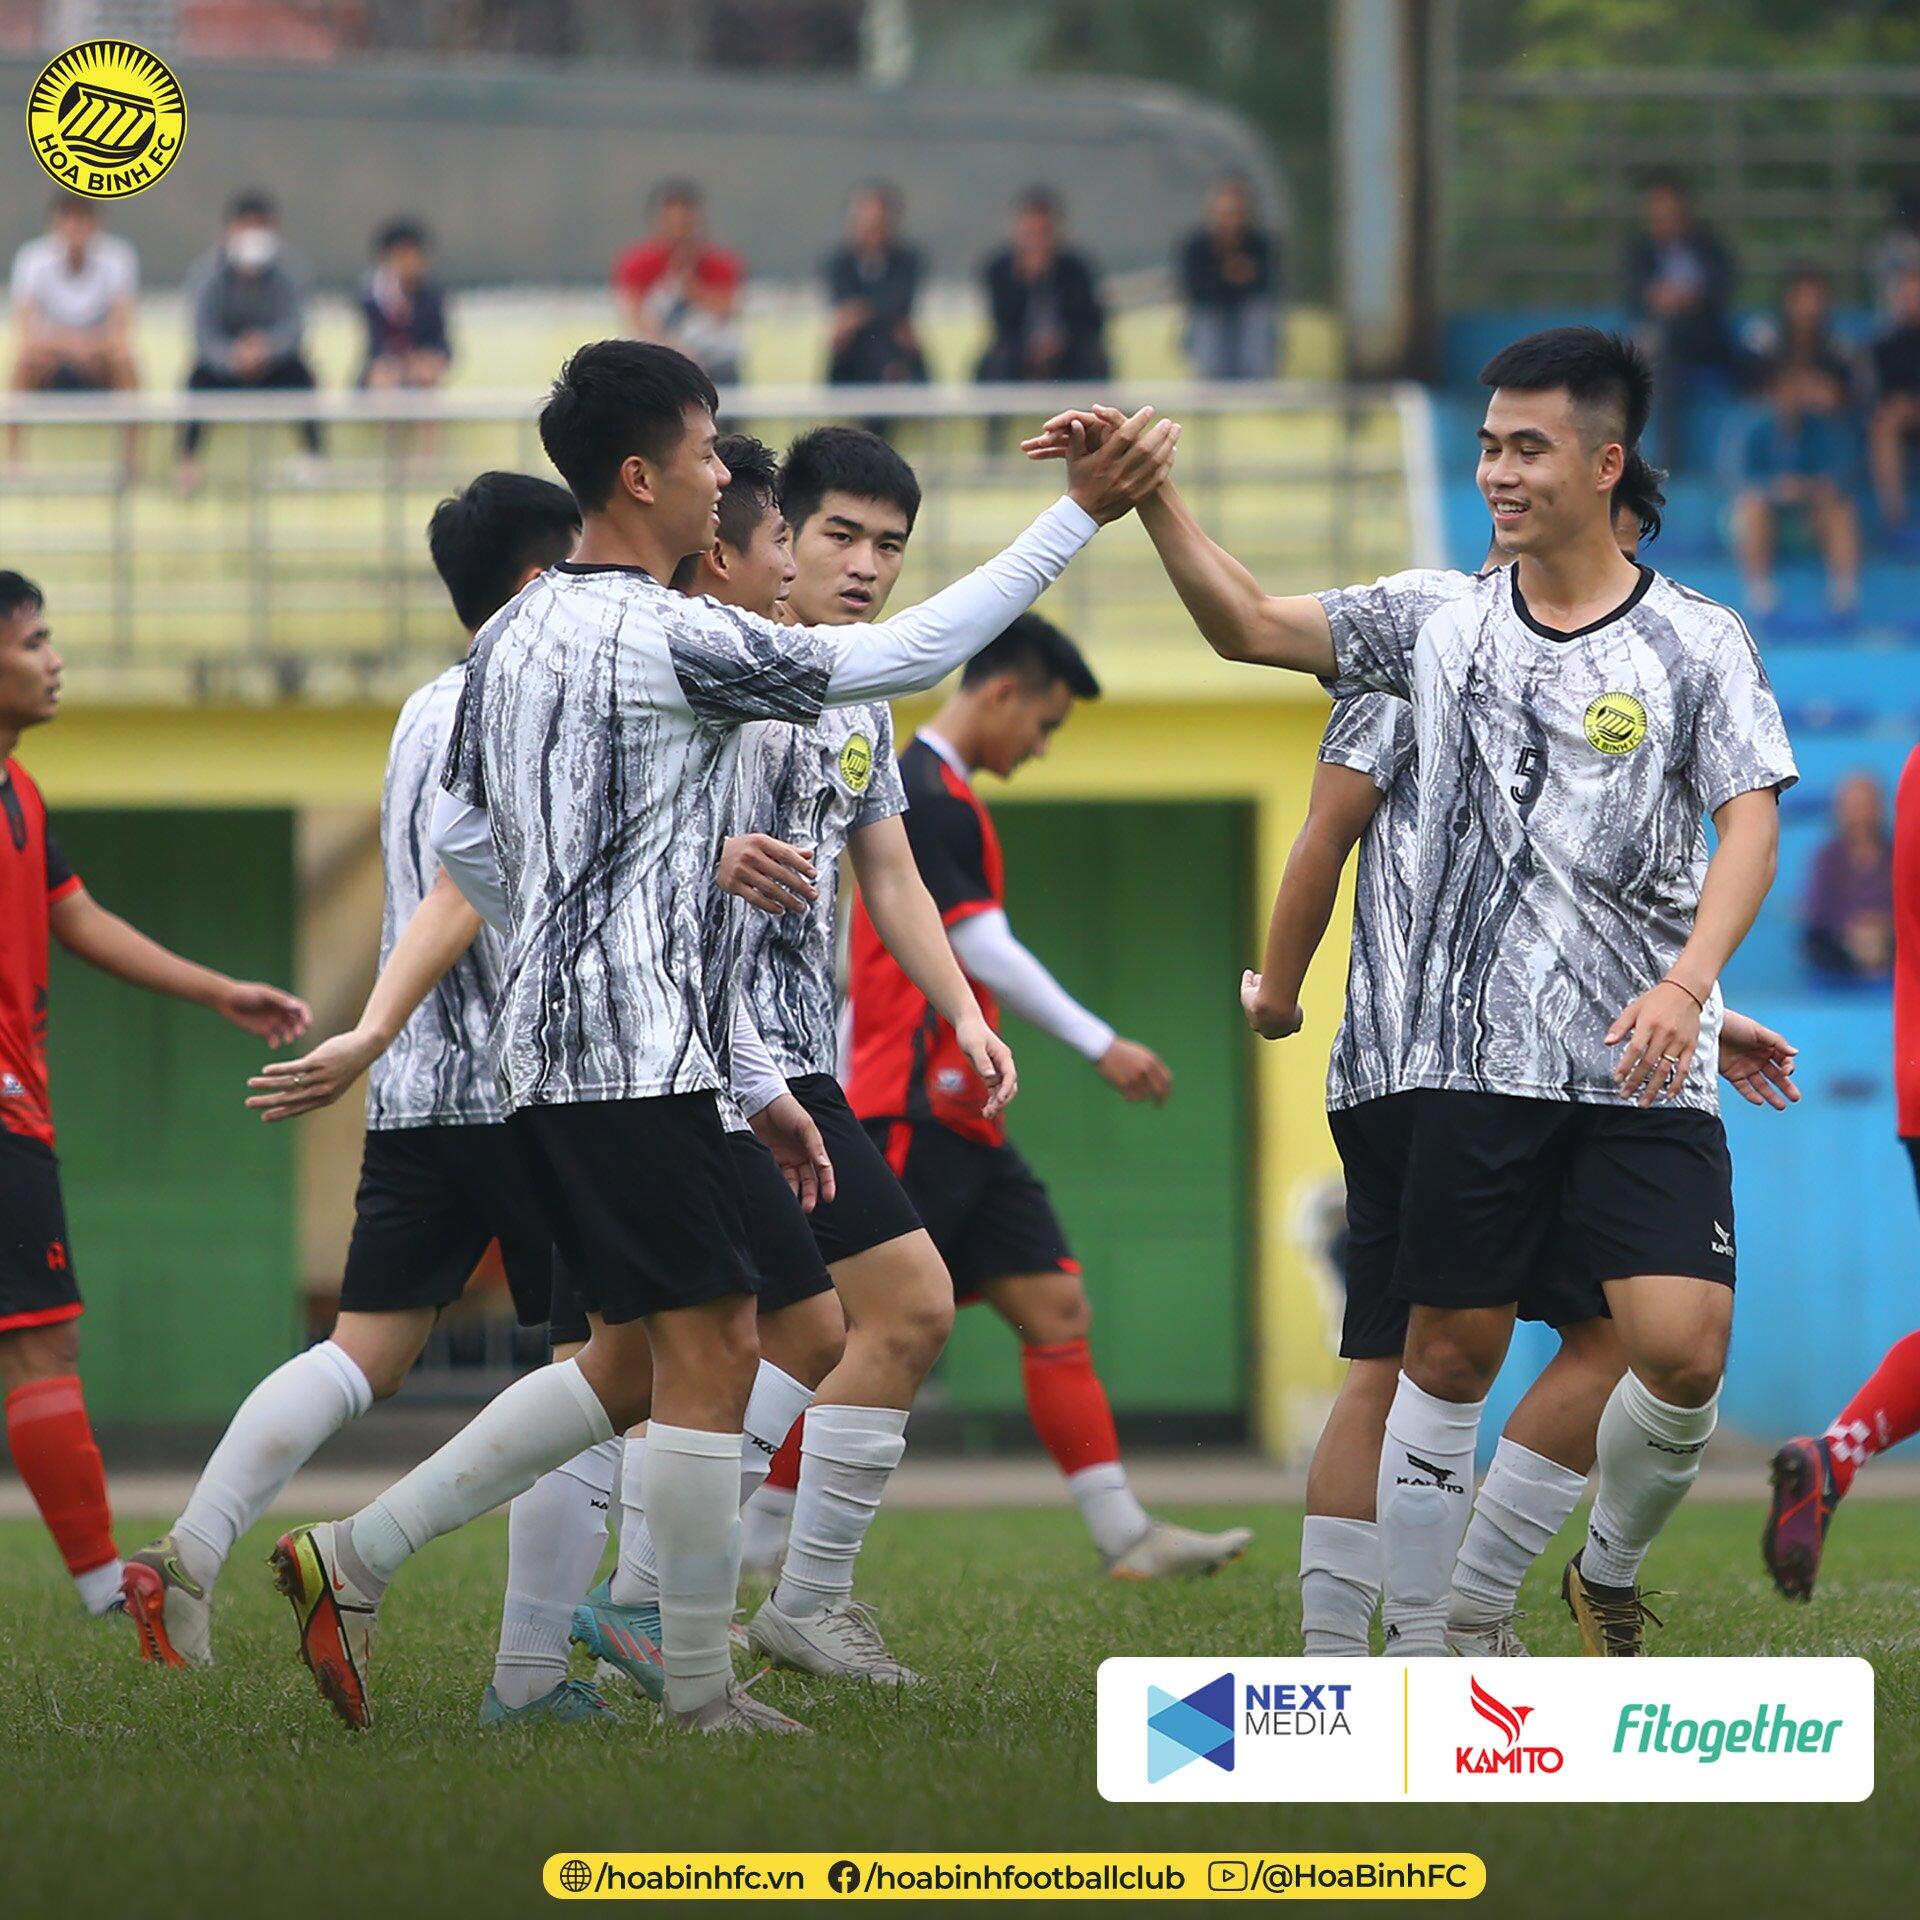 CLB Hòa Bình tích cực tham gia nhiều trận giao hữu và thu về kết quả lạc quan: hòa U20 Việt Nam 3-3, thắng CLB Phú Thọ 5-2 và mới đây hòa CLB PVF - CAND với tỷ số 0-0 (Ảnh: Internet)